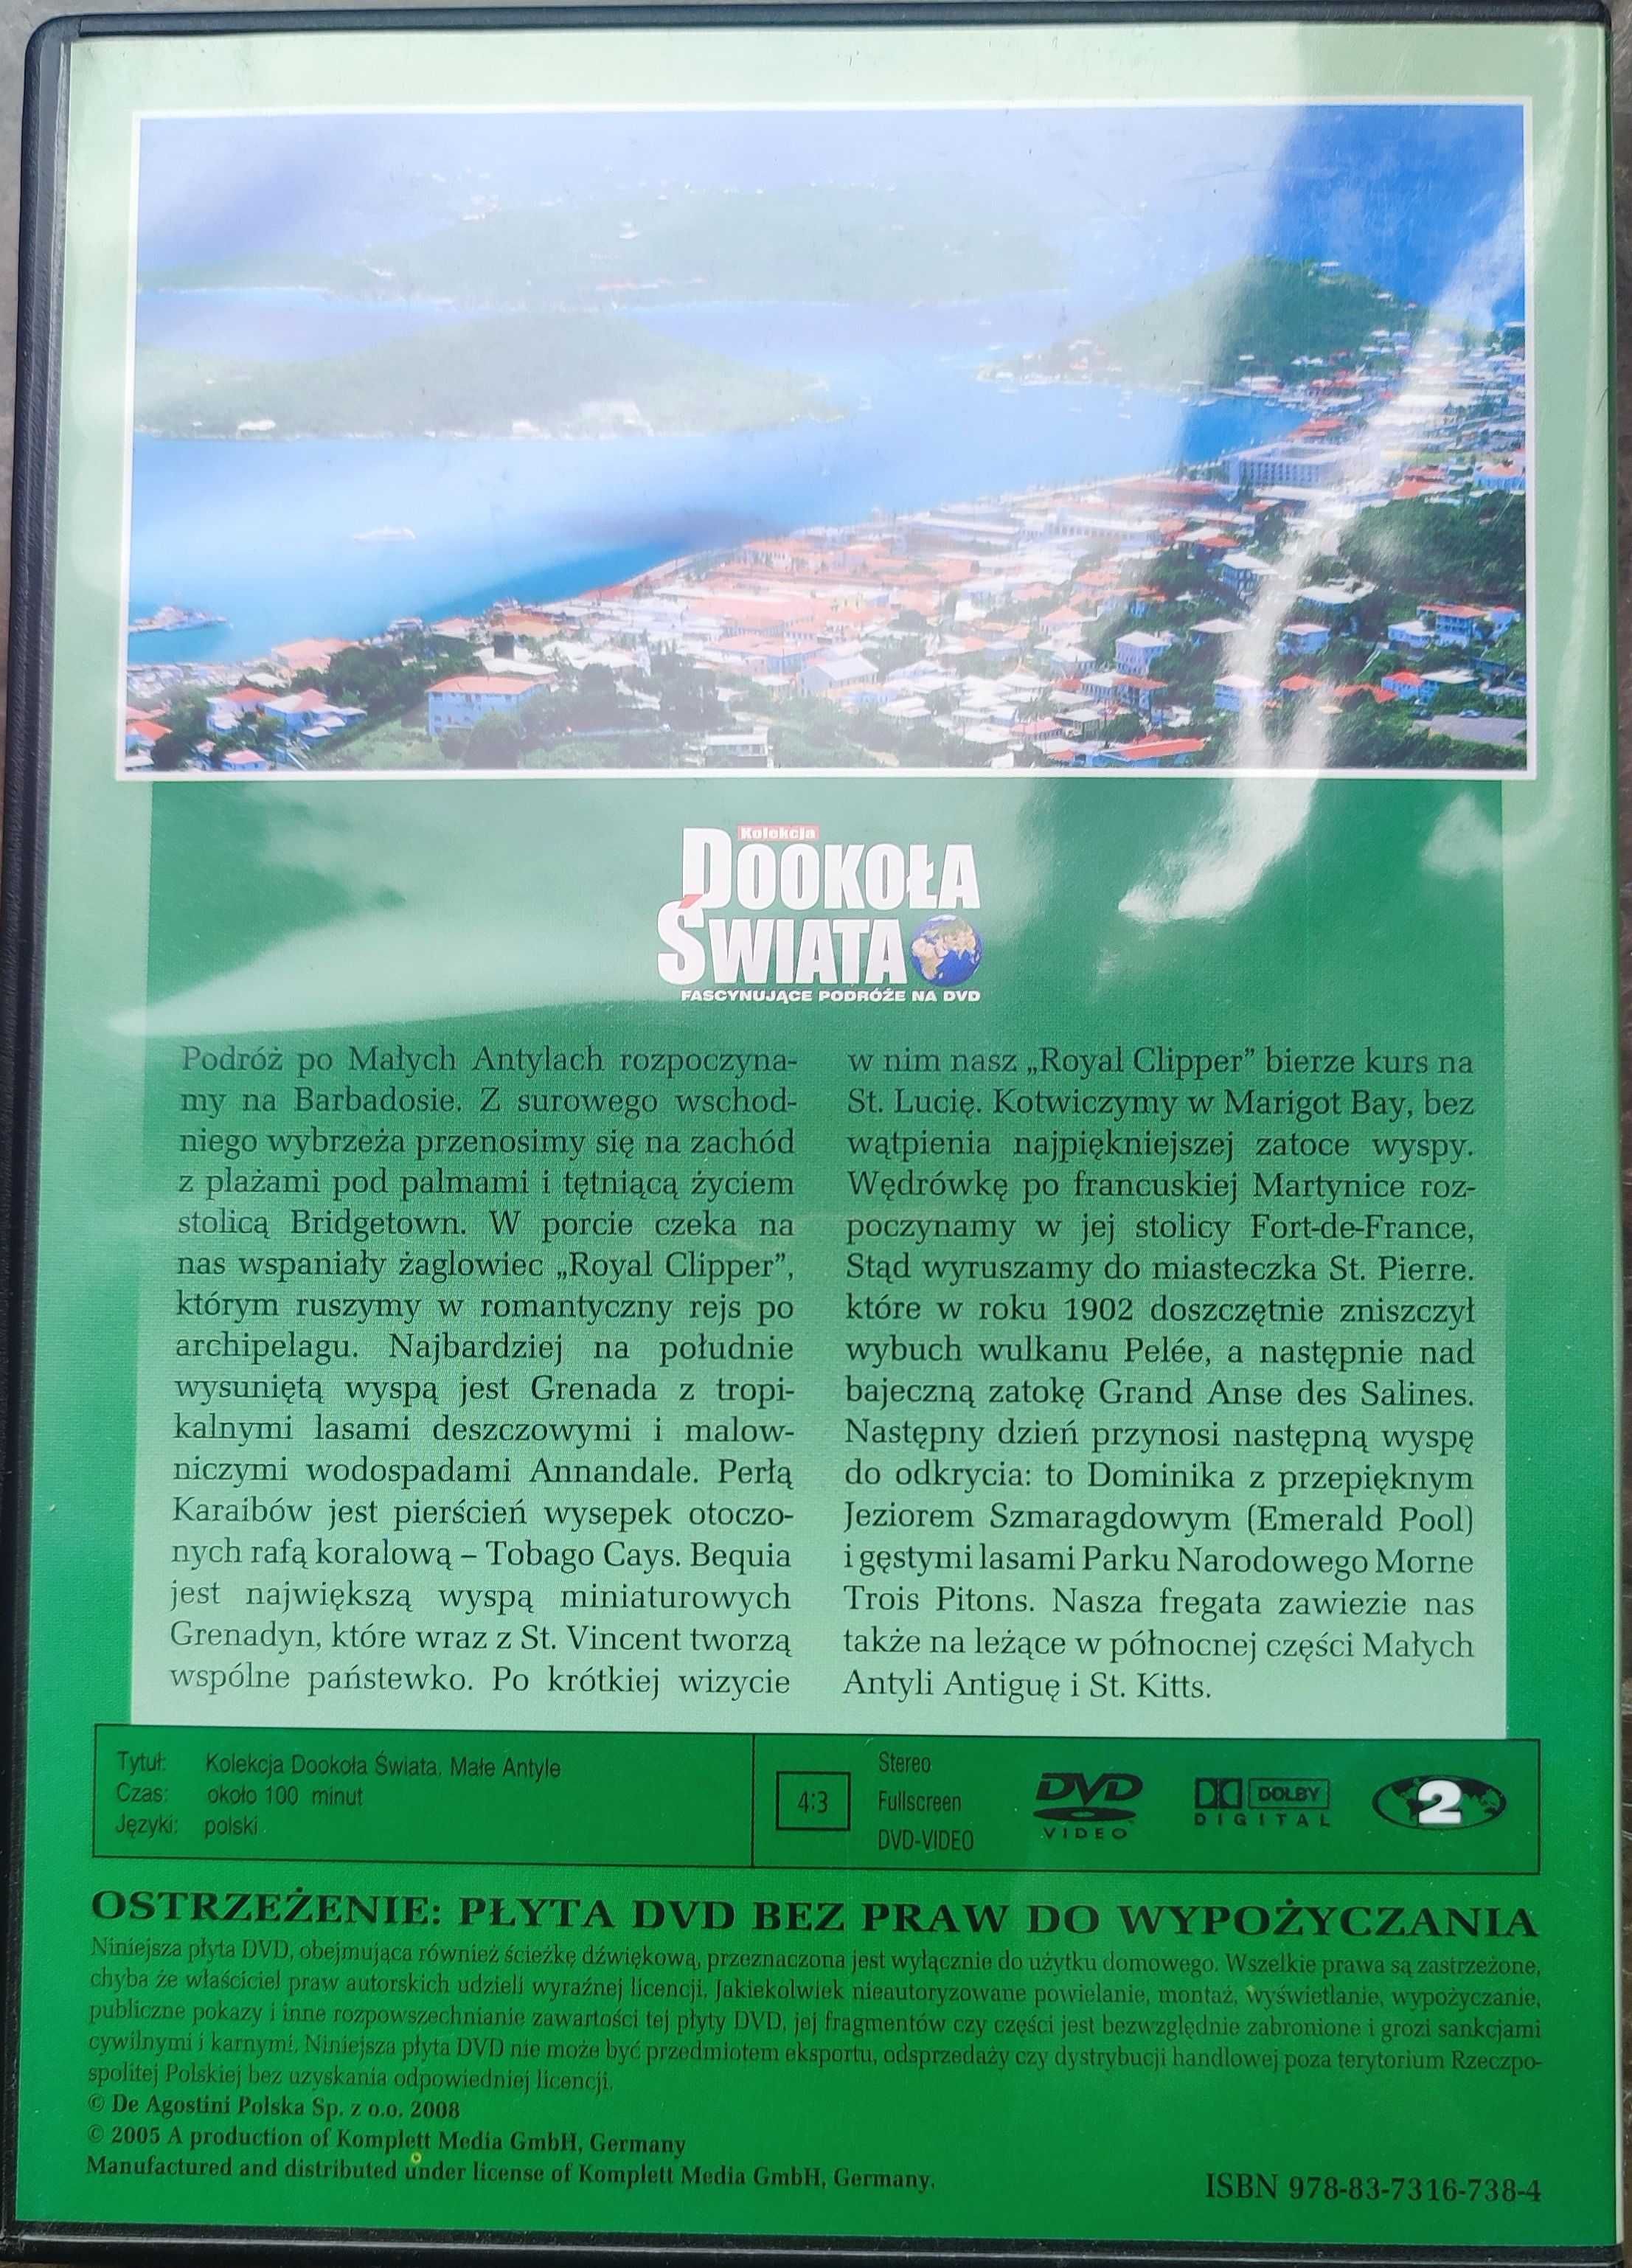 Film DVD Wyspy karaibskie. cz. 2. Małe Antyle. Kolekcja Dookoła Świata